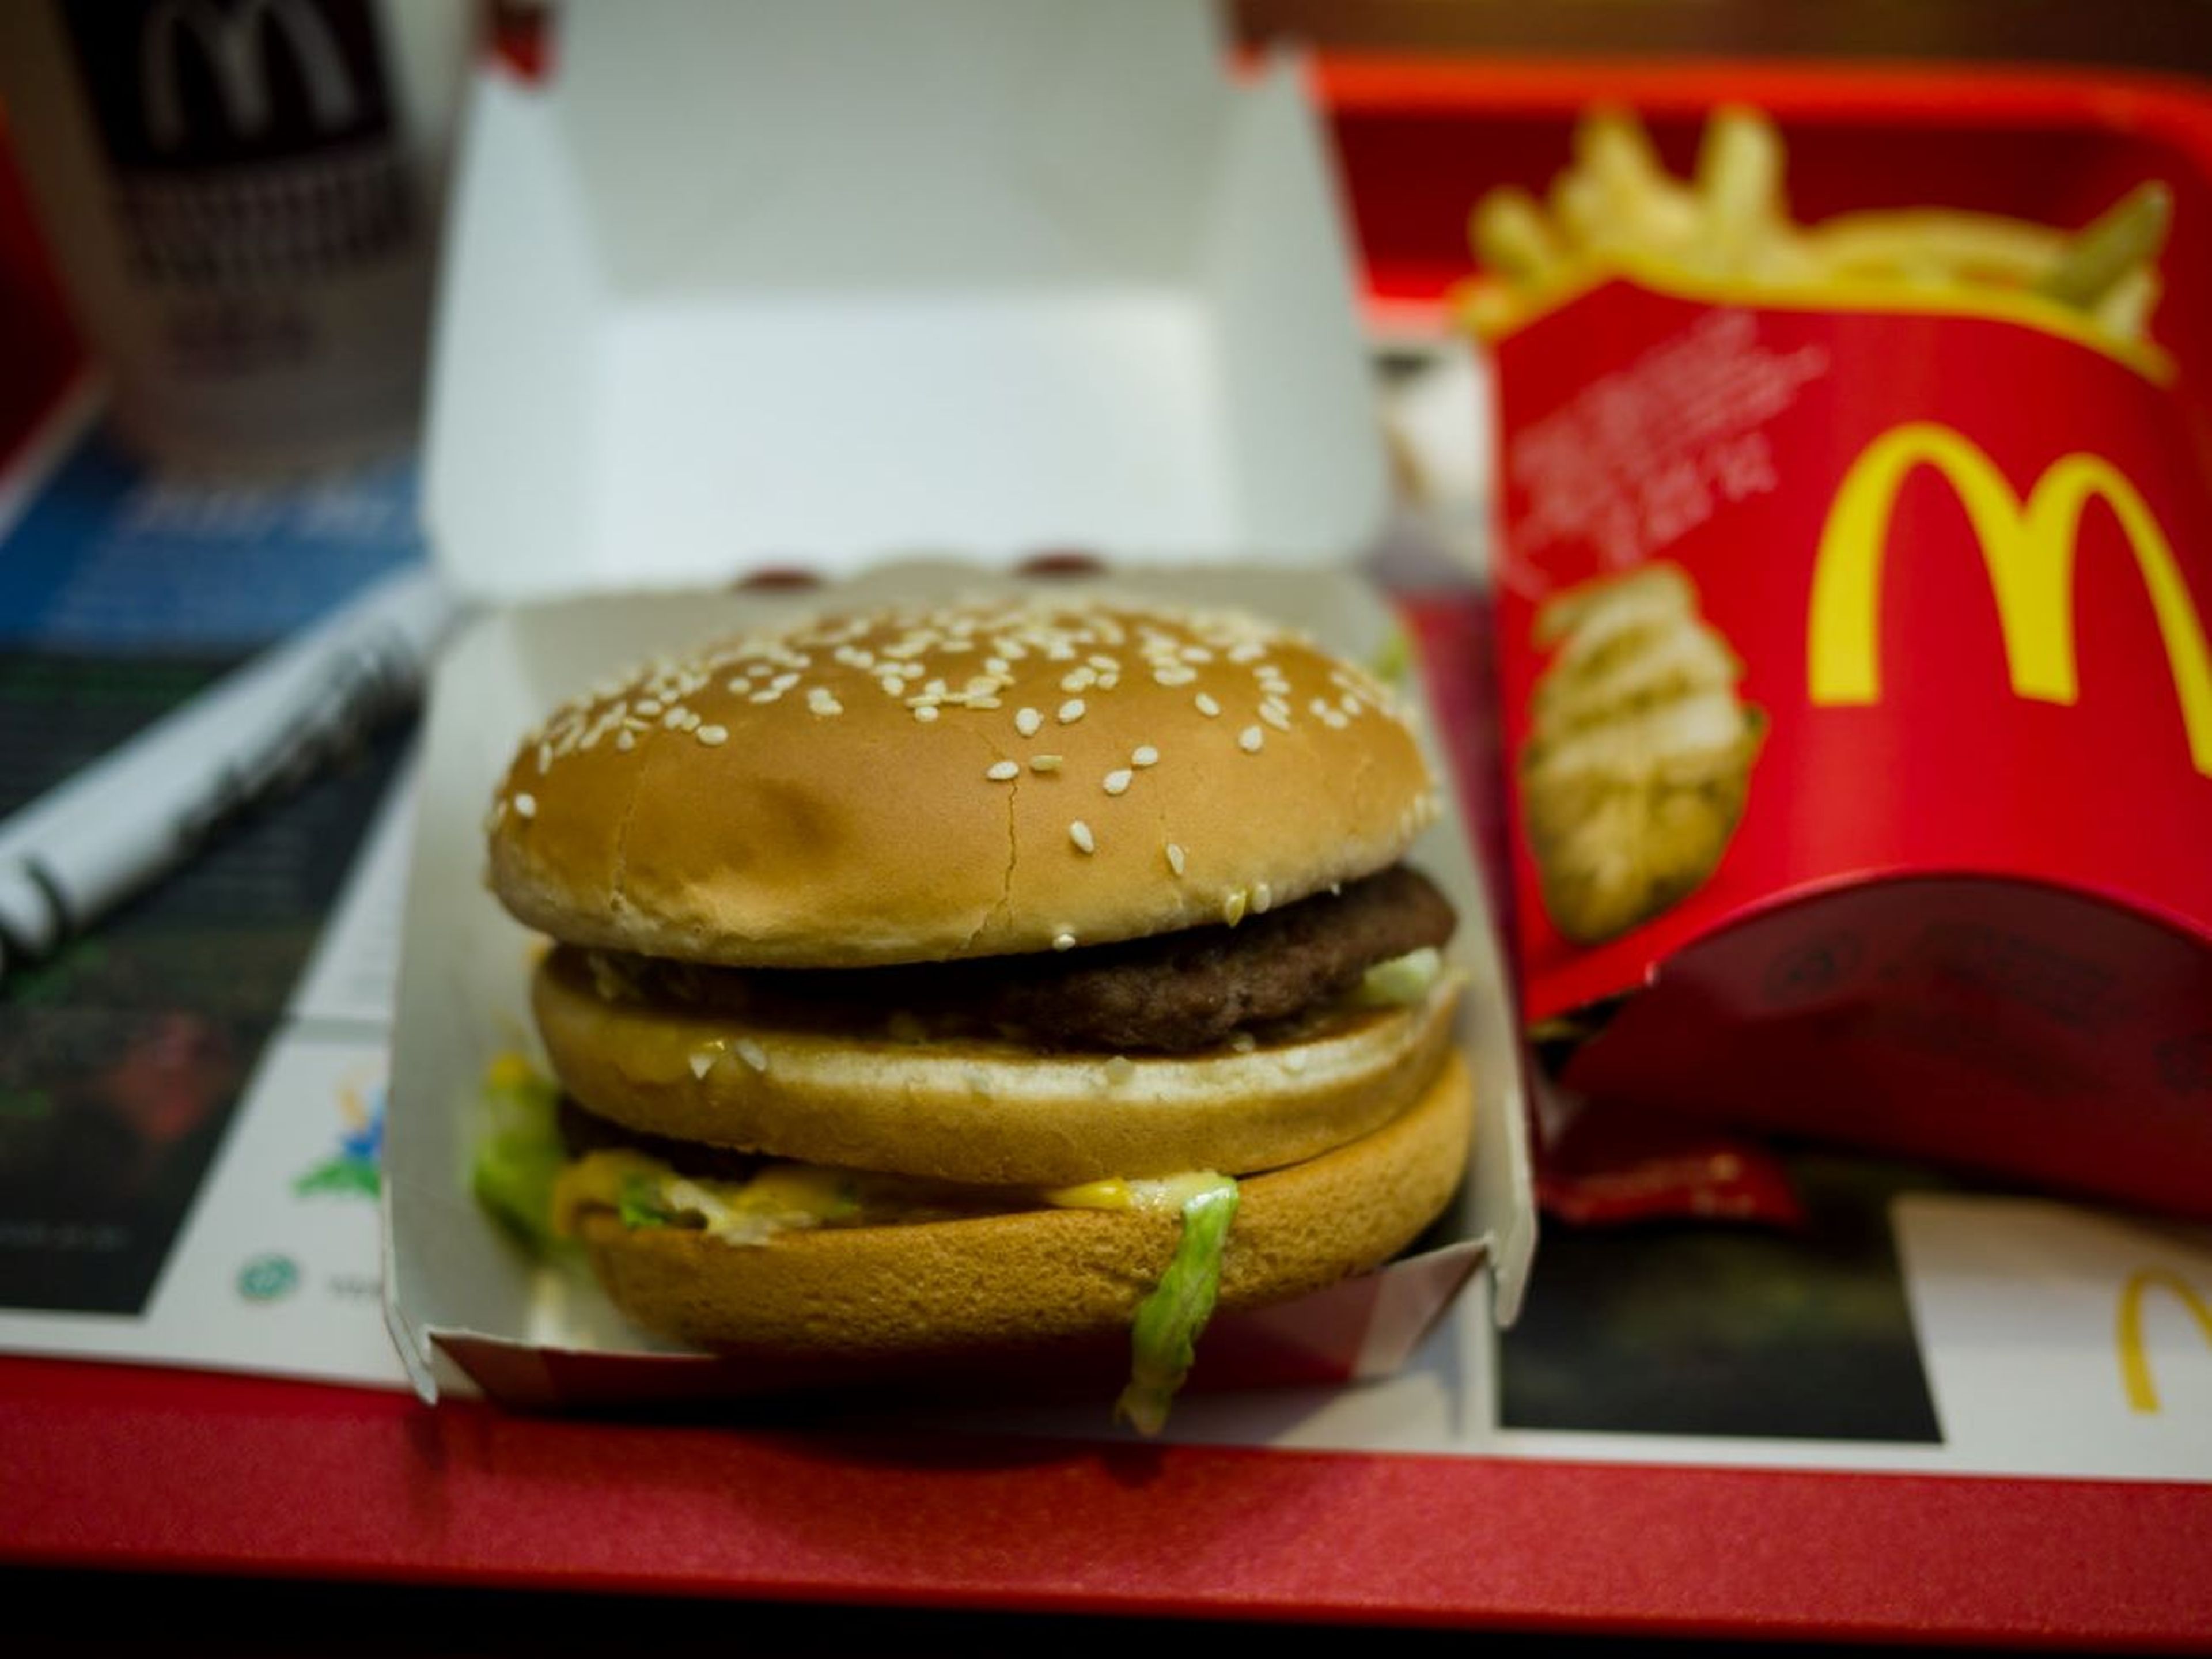 Una entrenadora de fitness enseña cómo hacer en casa una hamburguesa Big Mac más sana con ingredientes de Aldi; el truco, un artículo que sabe "literalmente a McDonald's"